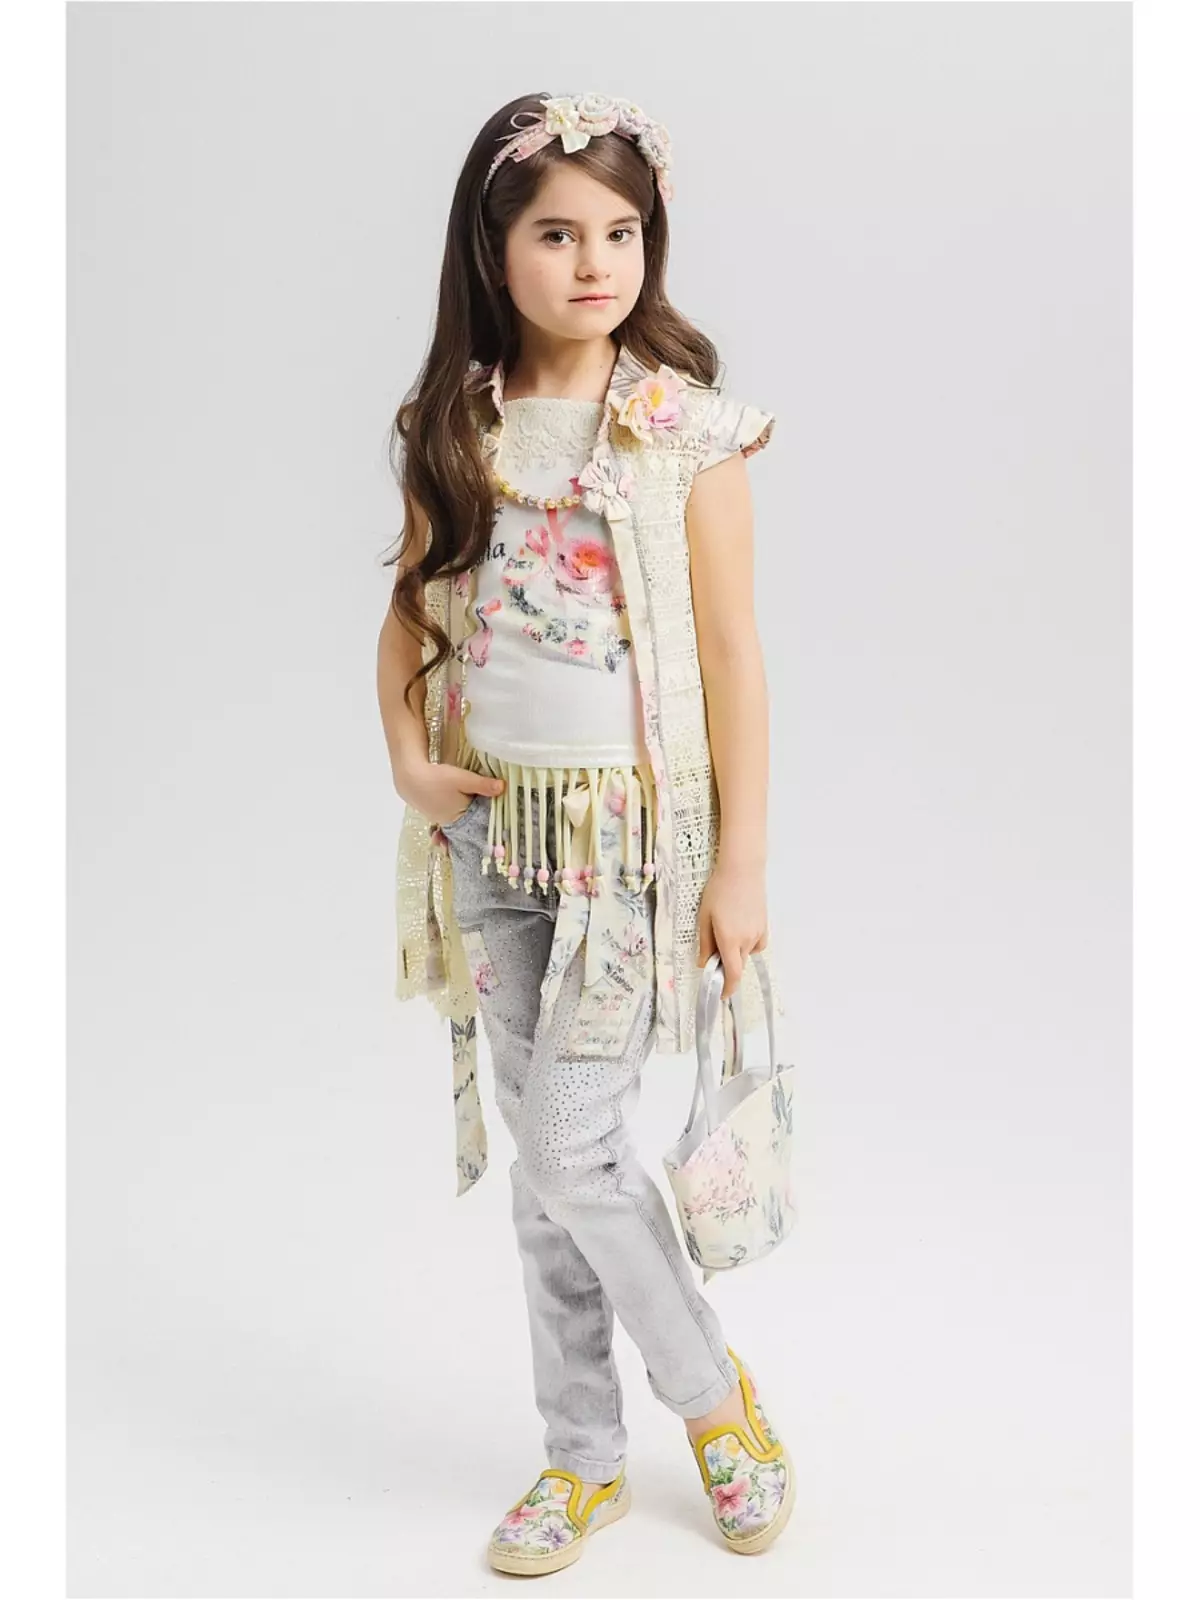 Kleid für Mädchen Baby Steen (50 Fotos): Modelle mit Cape, Mantel und Andere Kinderkleidung 3766_2